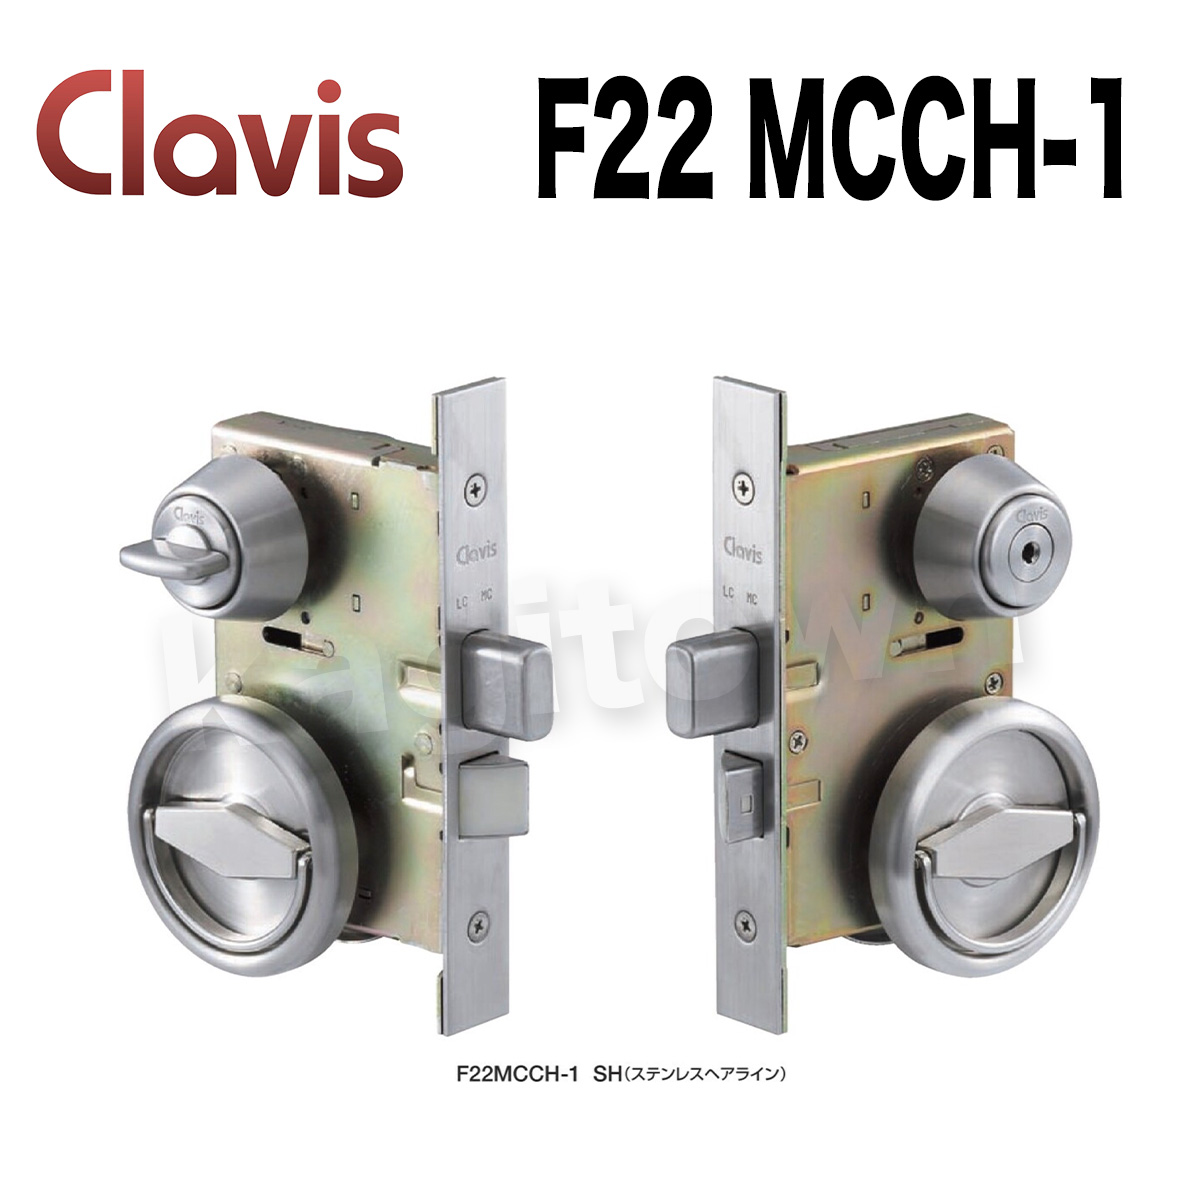 Clavis F22 MCCH-1【クラビス】本締錠 納期2~4週間 